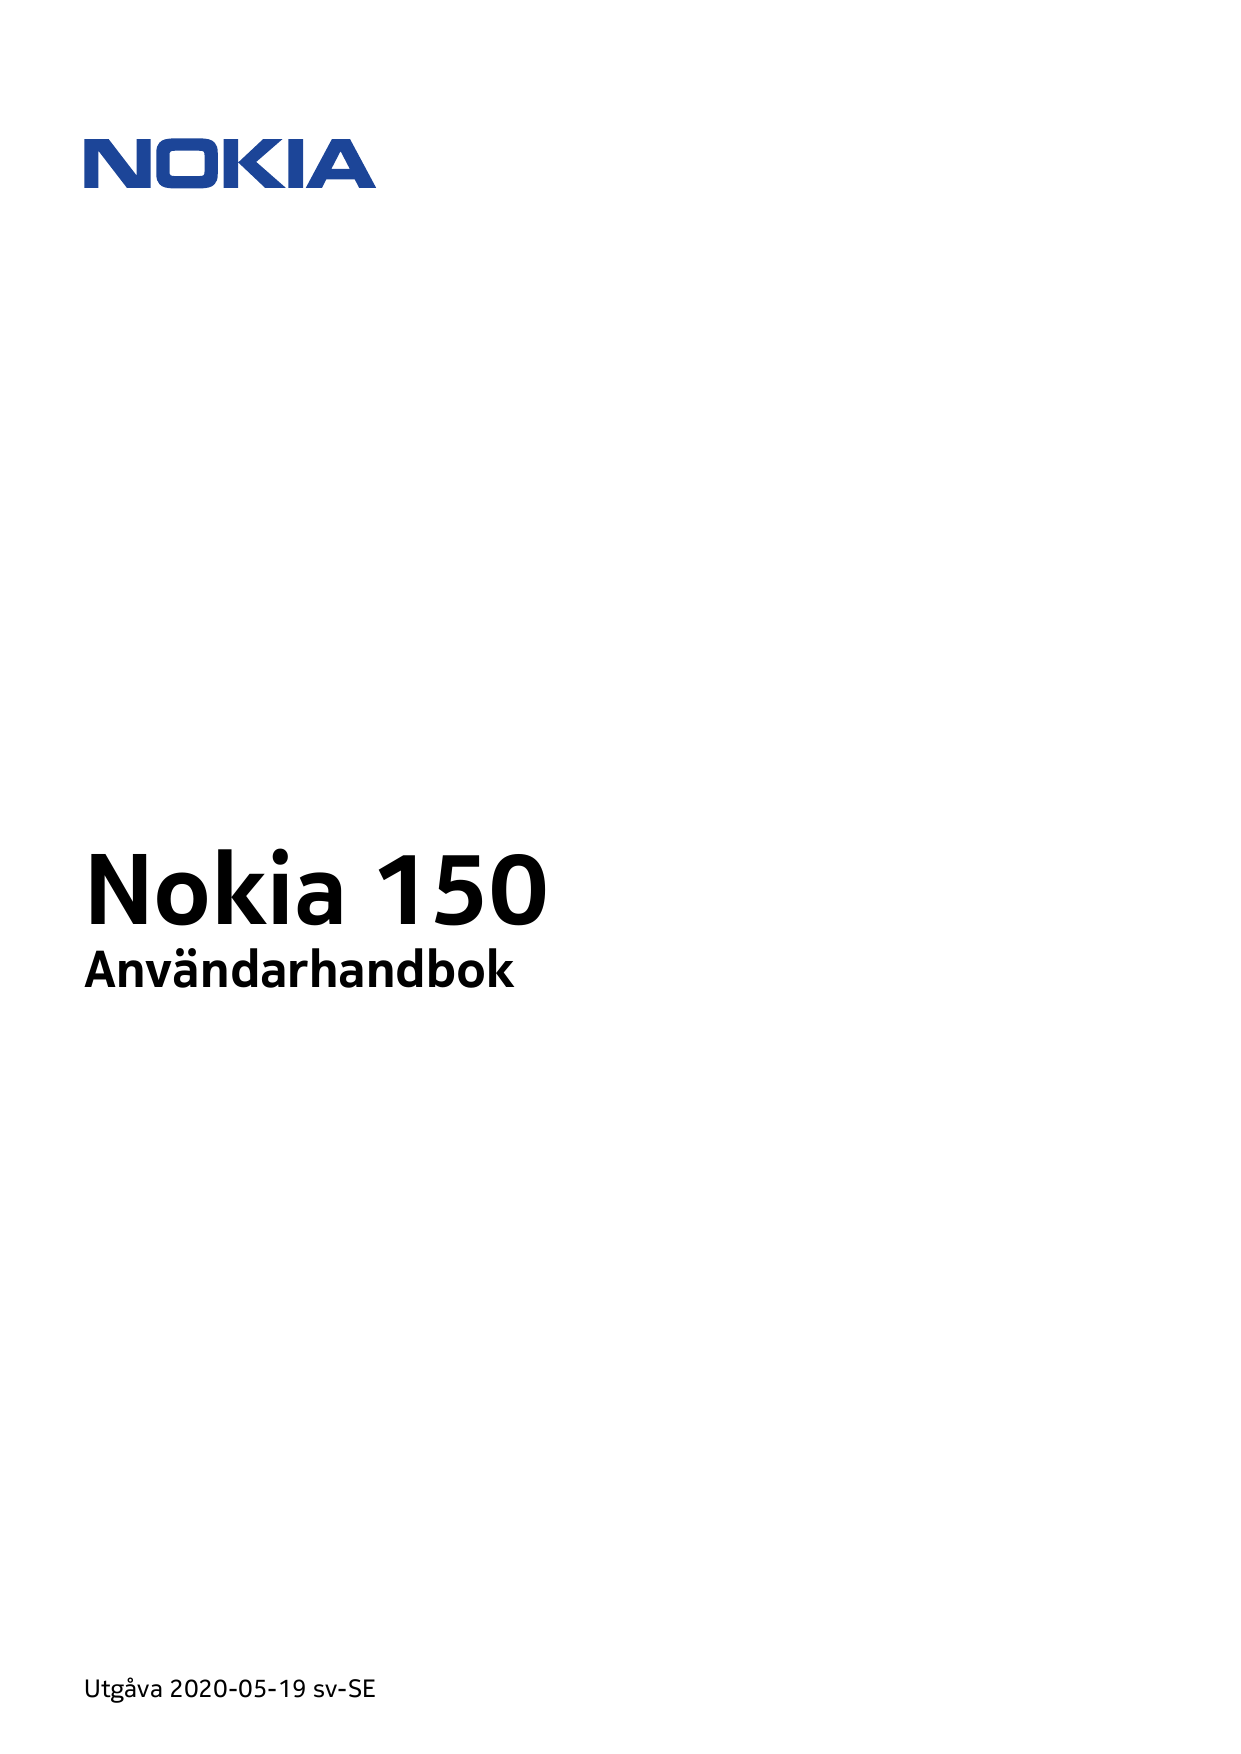 Nokia 150AnvändarhandbokUtgåva 2020-05-19 sv-SE